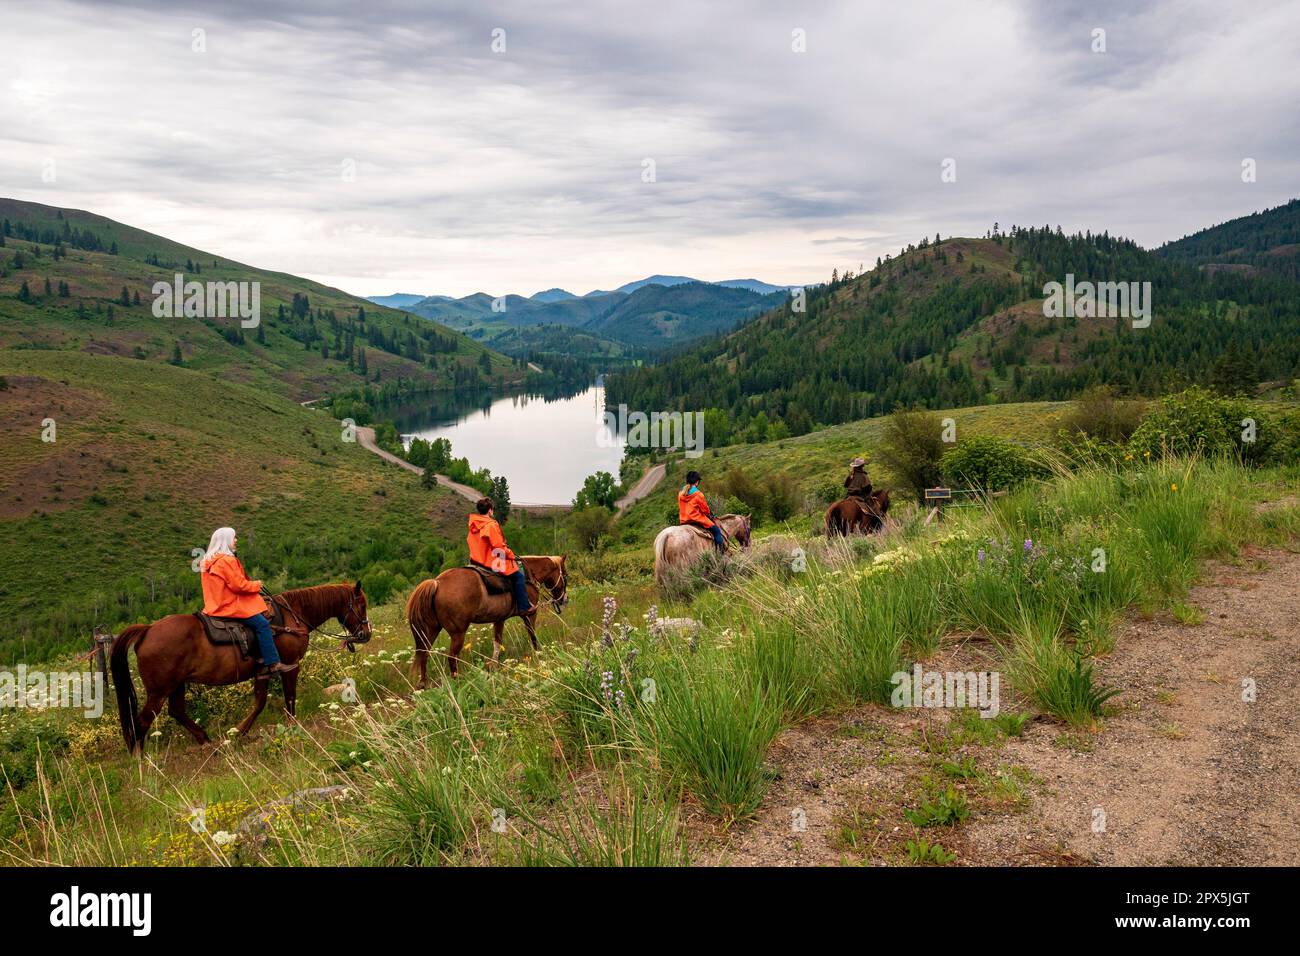 Quattro cavalli con cavalieri in giacche arancioni camminano su Sun Mountain, con Patterson Lake e Cascade Mountains in lontananza. Foto Stock